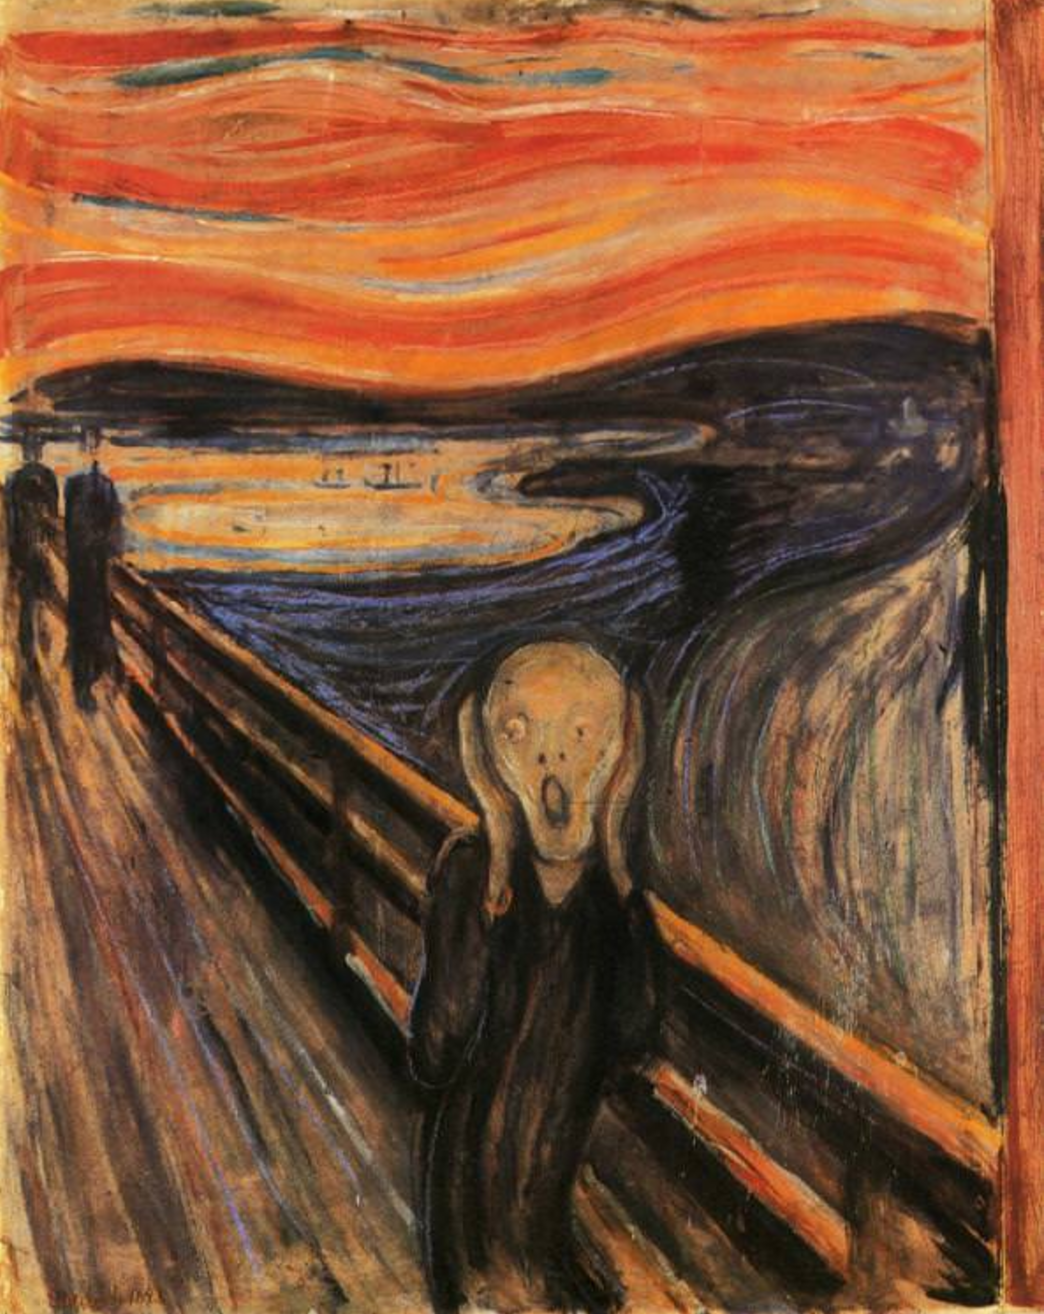 এক্সপ্রেশনিজম, এডভার্ড মান্চ, দ্য স্ক্রিম (The Scream) ১৮৯৩